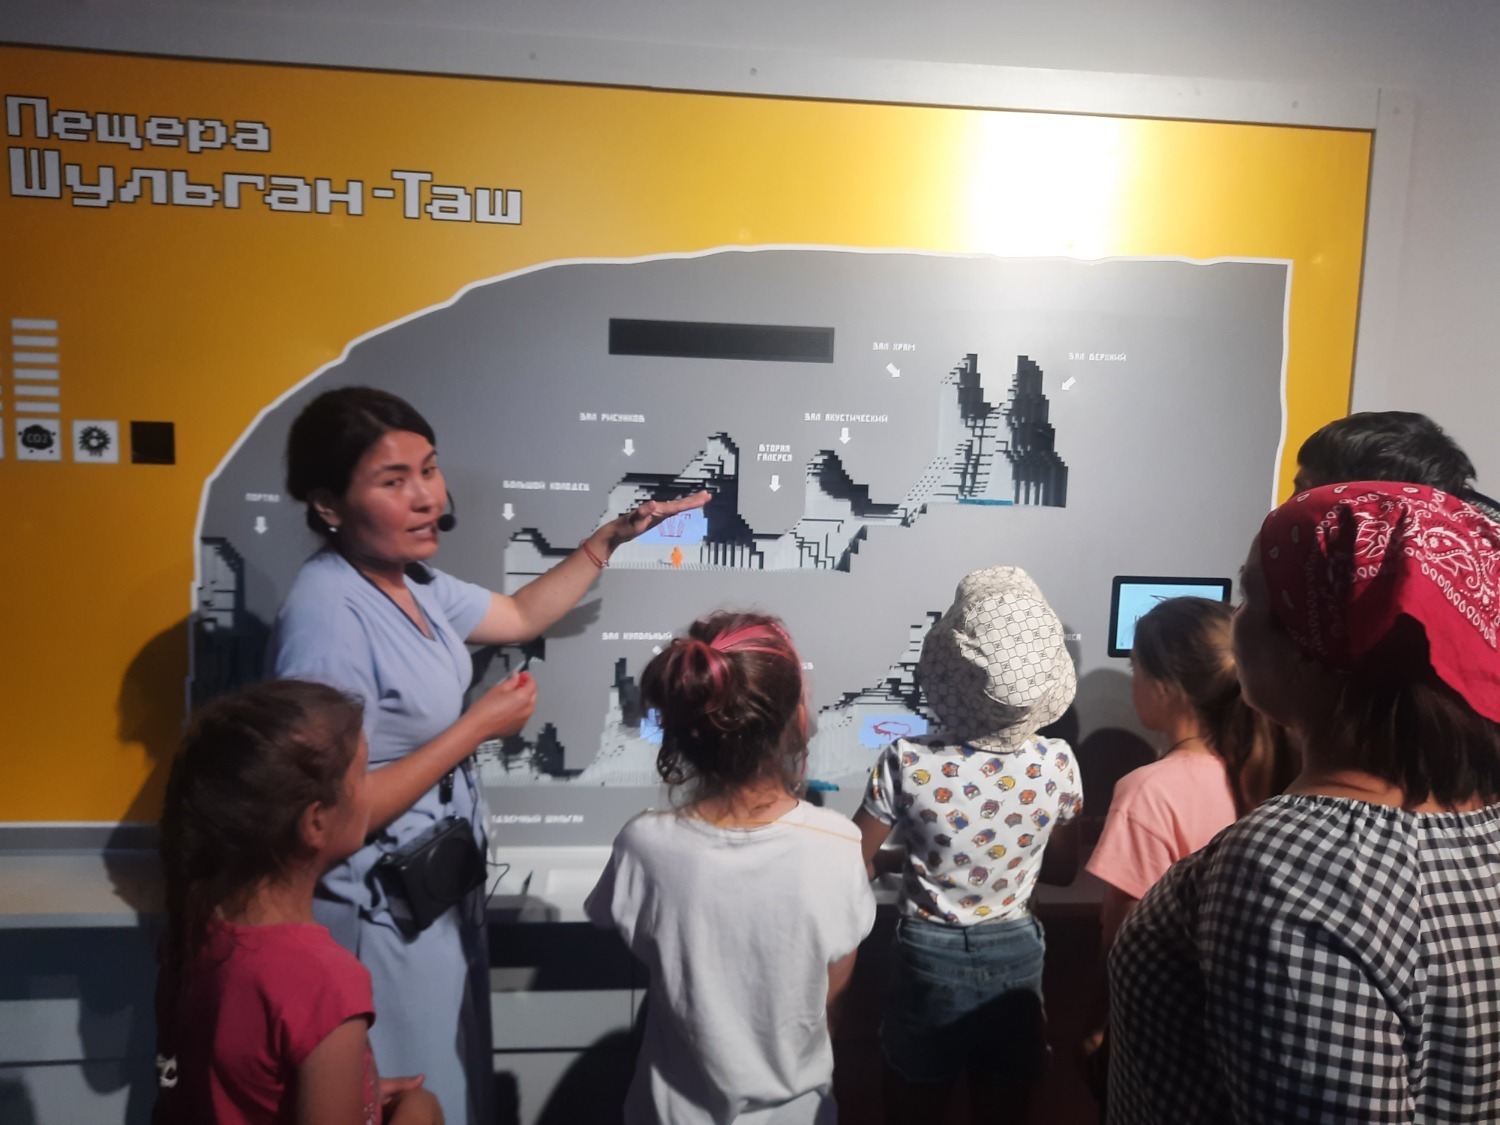 В Башкирии музей «Шульган-Таш» со дня открытия посетили более 6 тысяч человек